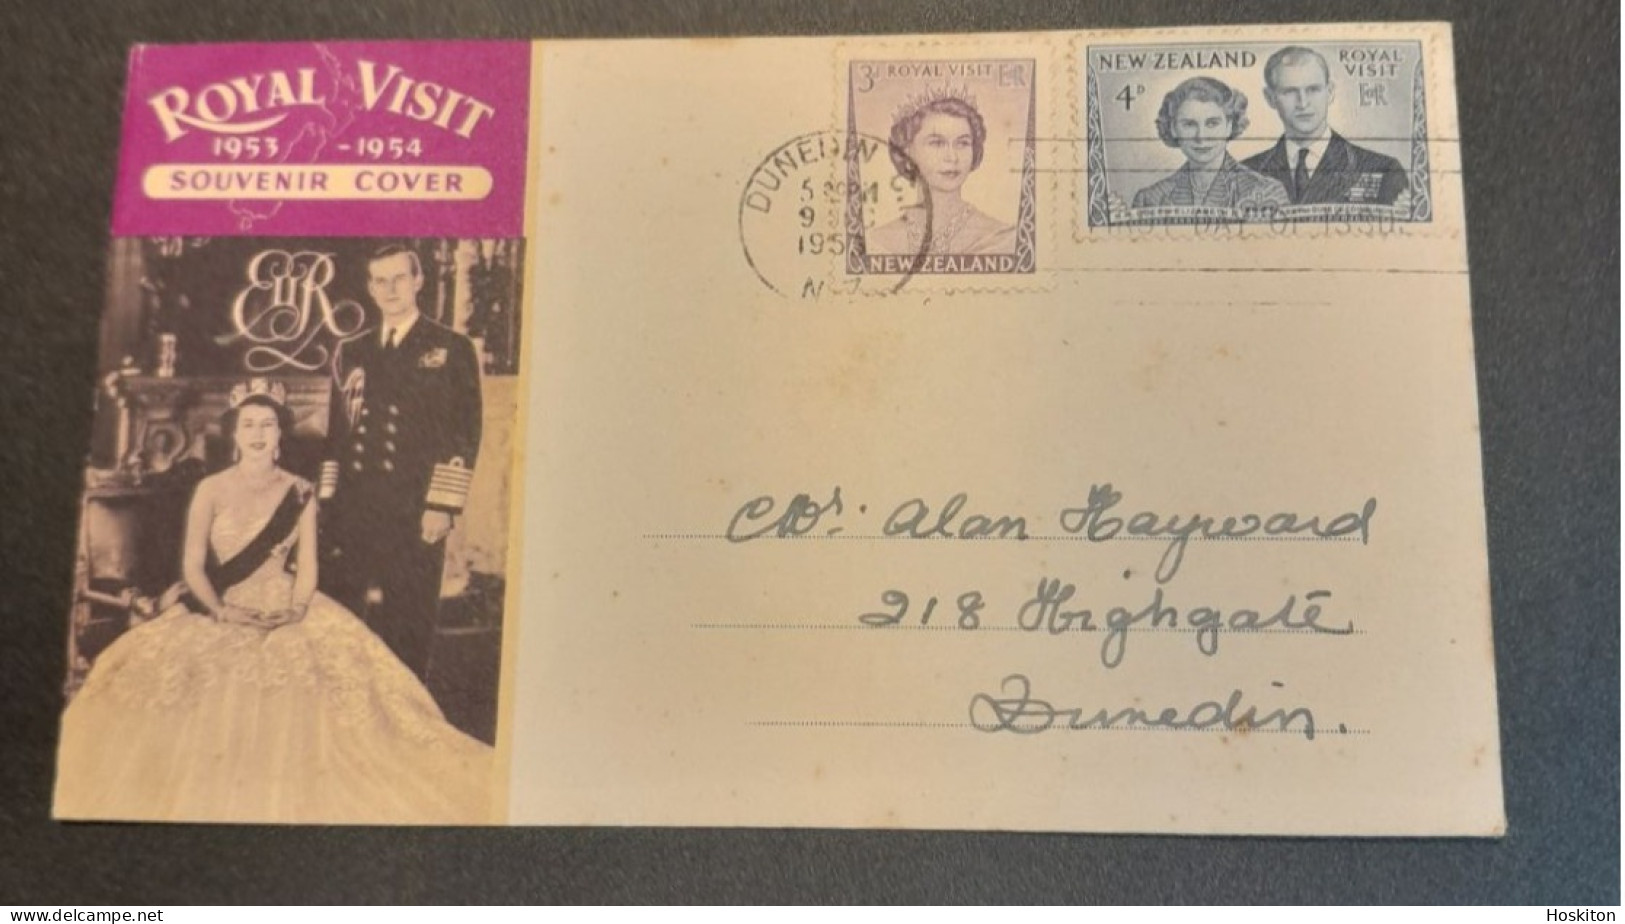 1953-1954 Royal Visit Souvenir Cover - Covers & Documents